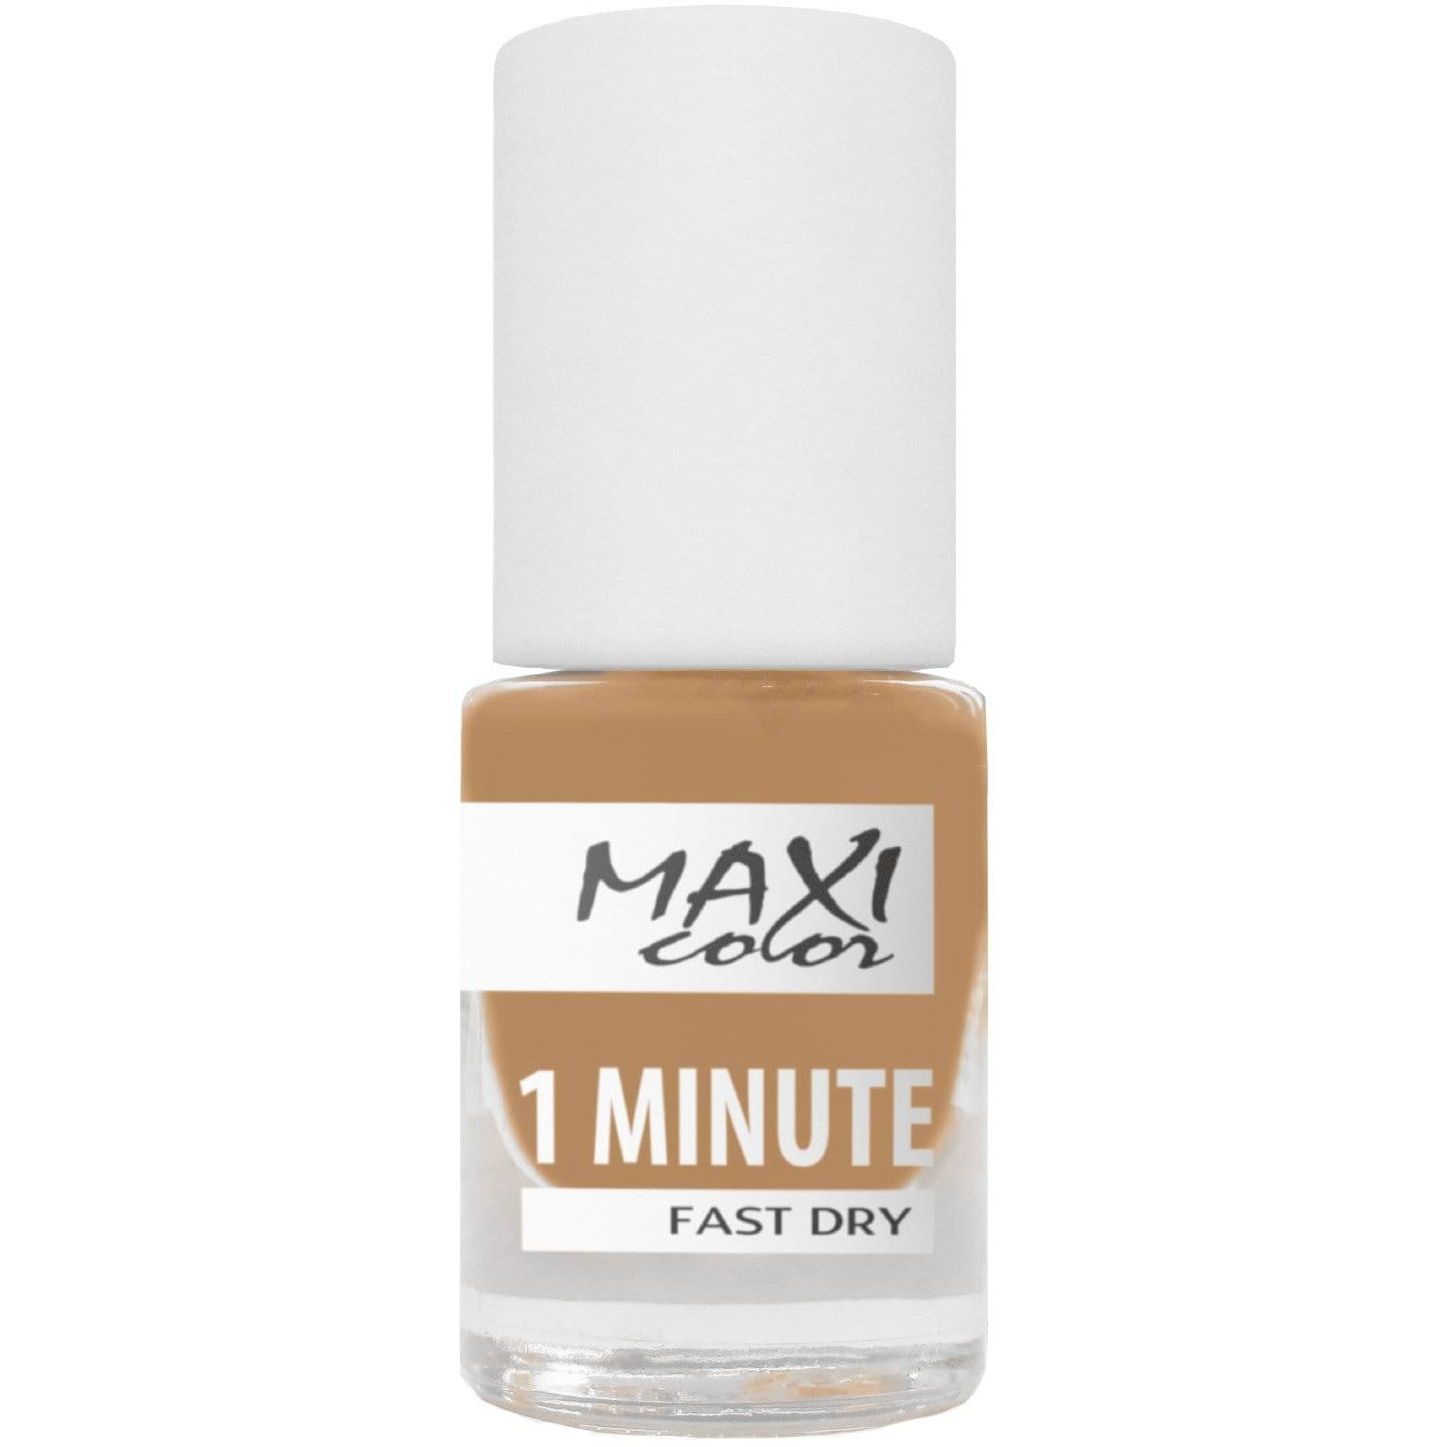 Лак для нігтів Maxi Color 1 Minute Fast Dry відтінок 029, 6 мл - фото 1